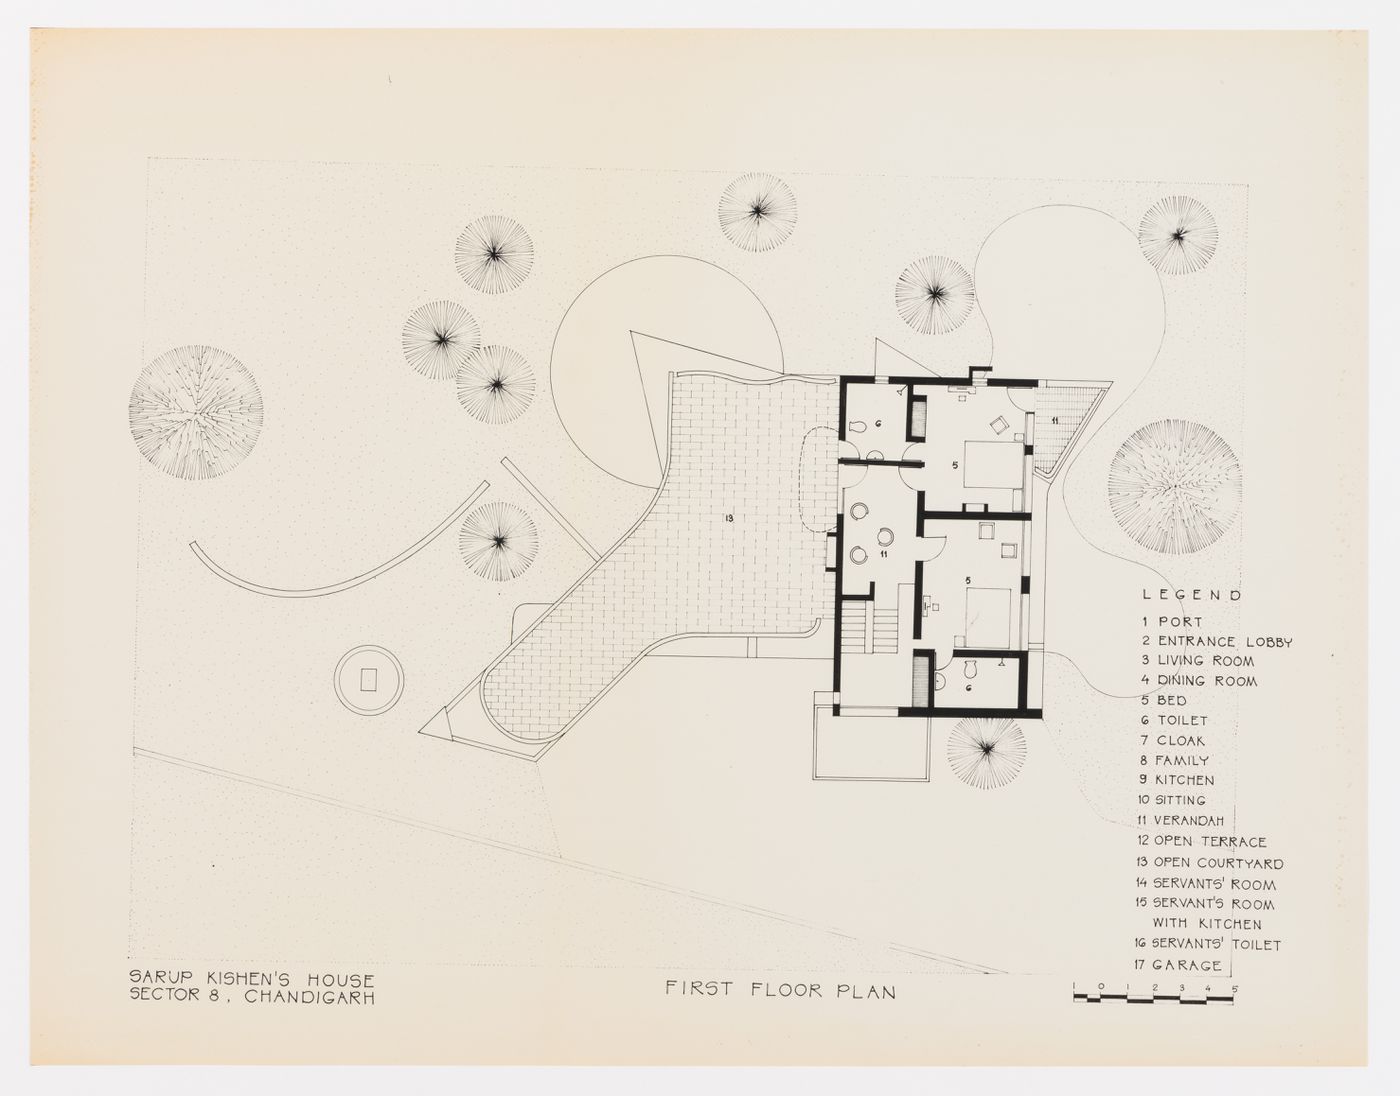 Plan du premier étage pour la Maison de Sakur Kishen, Secteur 8, à Chandigarh, Inde